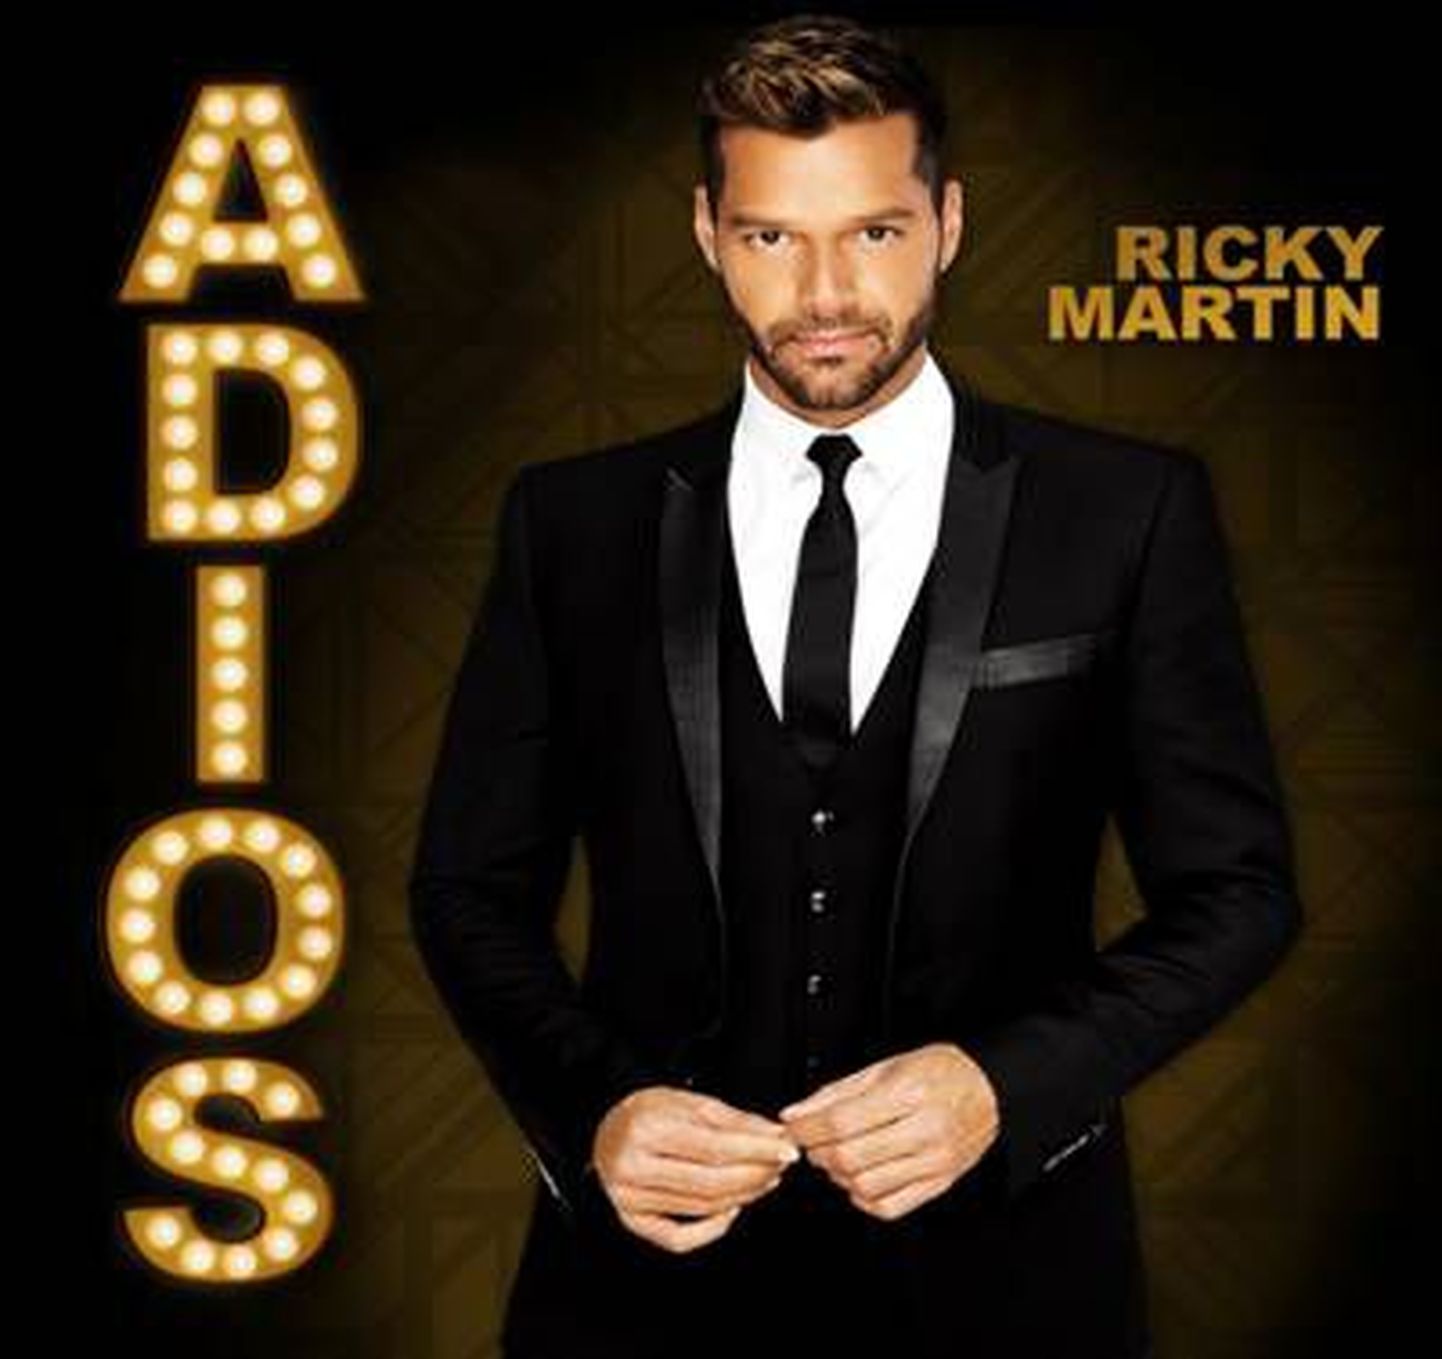 Ricky Martin avaldas tuleval aastal ilumvalt uuelt albumilt esimese singli ”Adios”